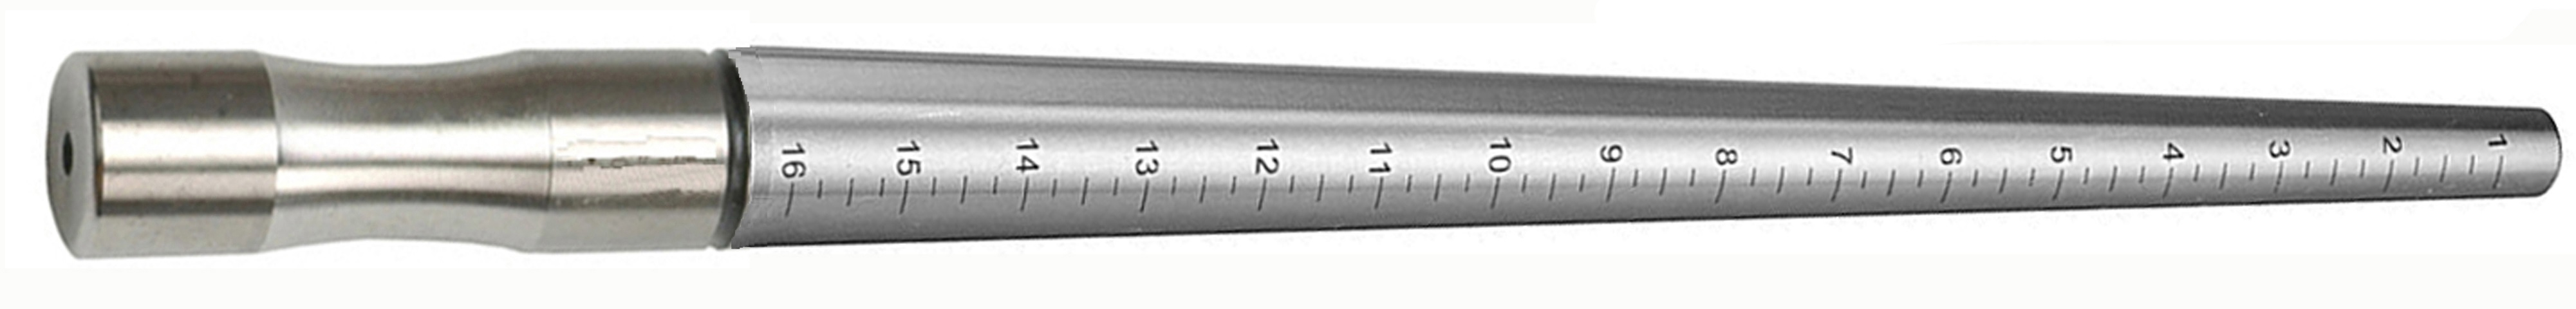 STAINLESS STEEL RING MANDREL, hard chromed , ungrooved, marked 1-16